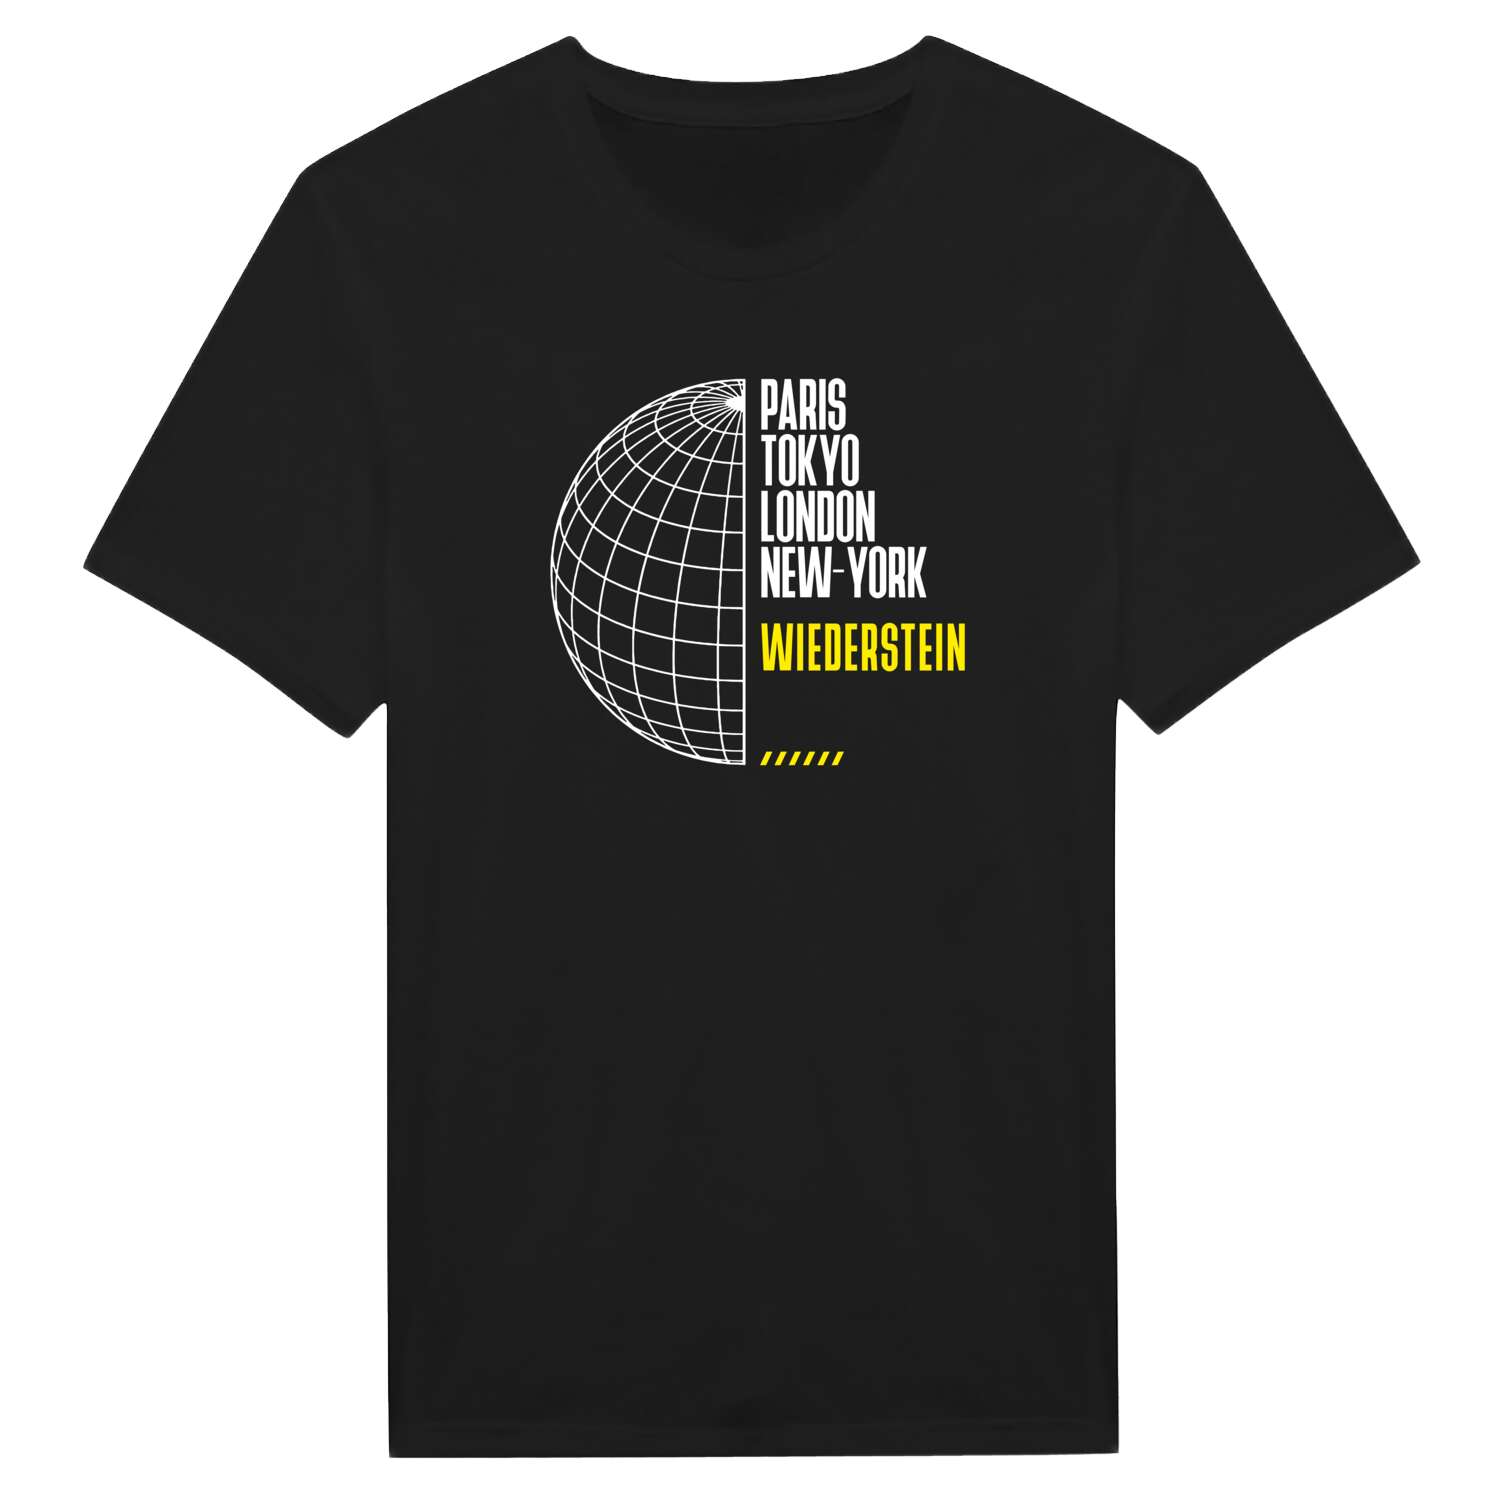 Wiederstein T-Shirt »Paris Tokyo London«